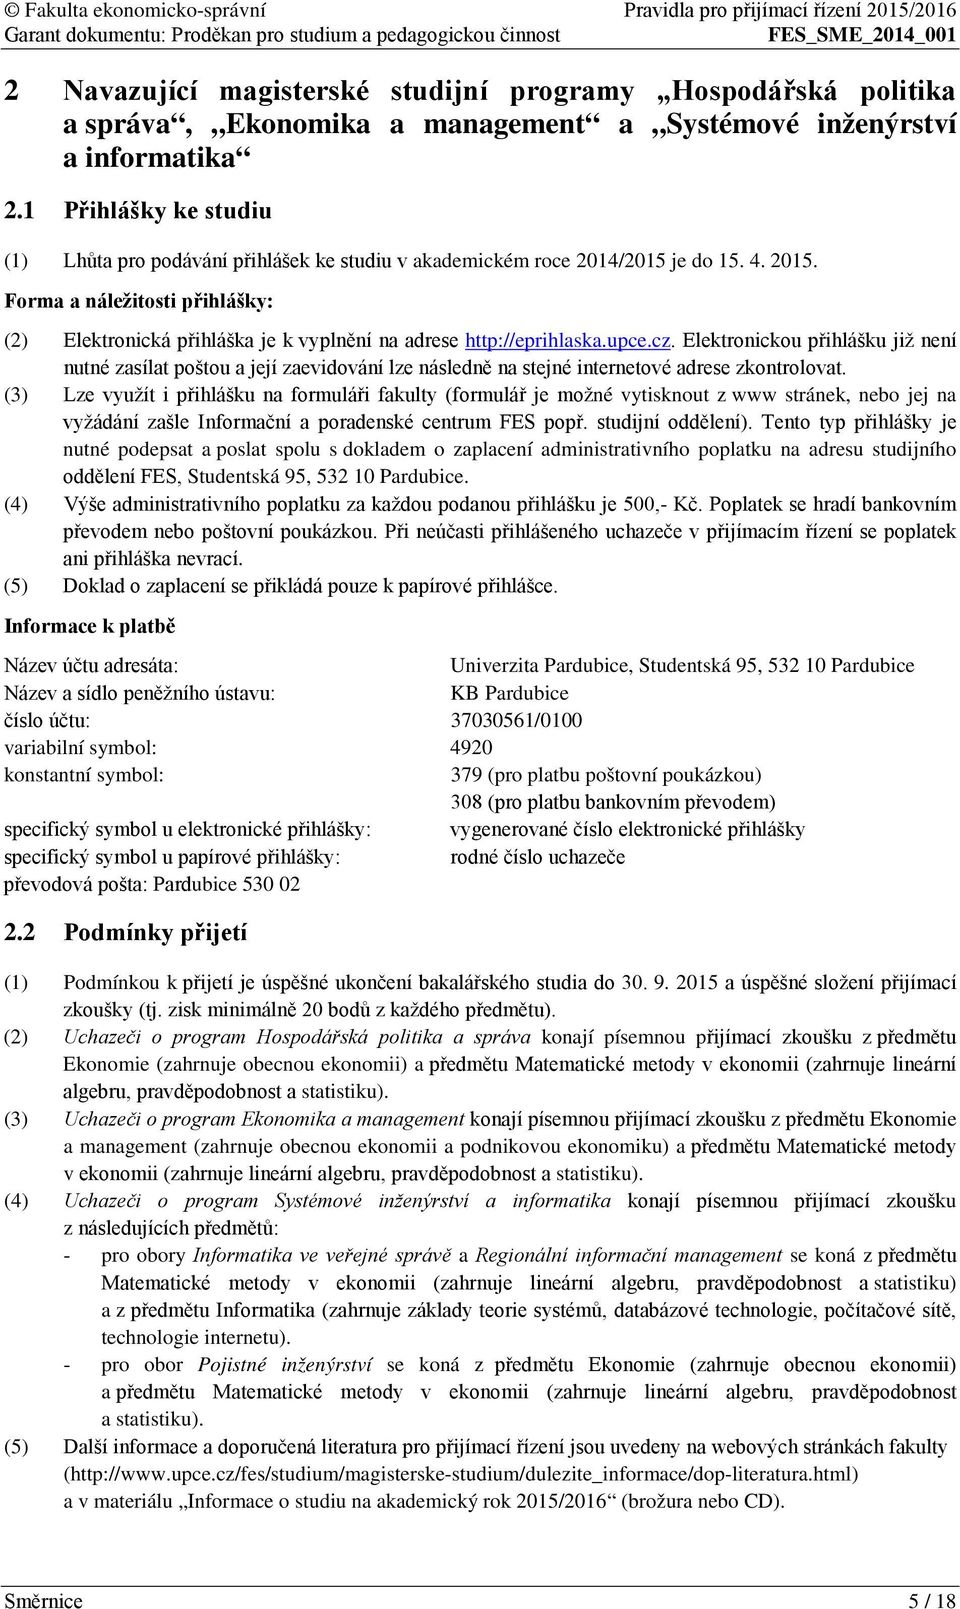 Forma a náležitosti přihlášky: (2) Elektronická přihláška je k vyplnění na adrese http://eprihlaska.upce.cz.